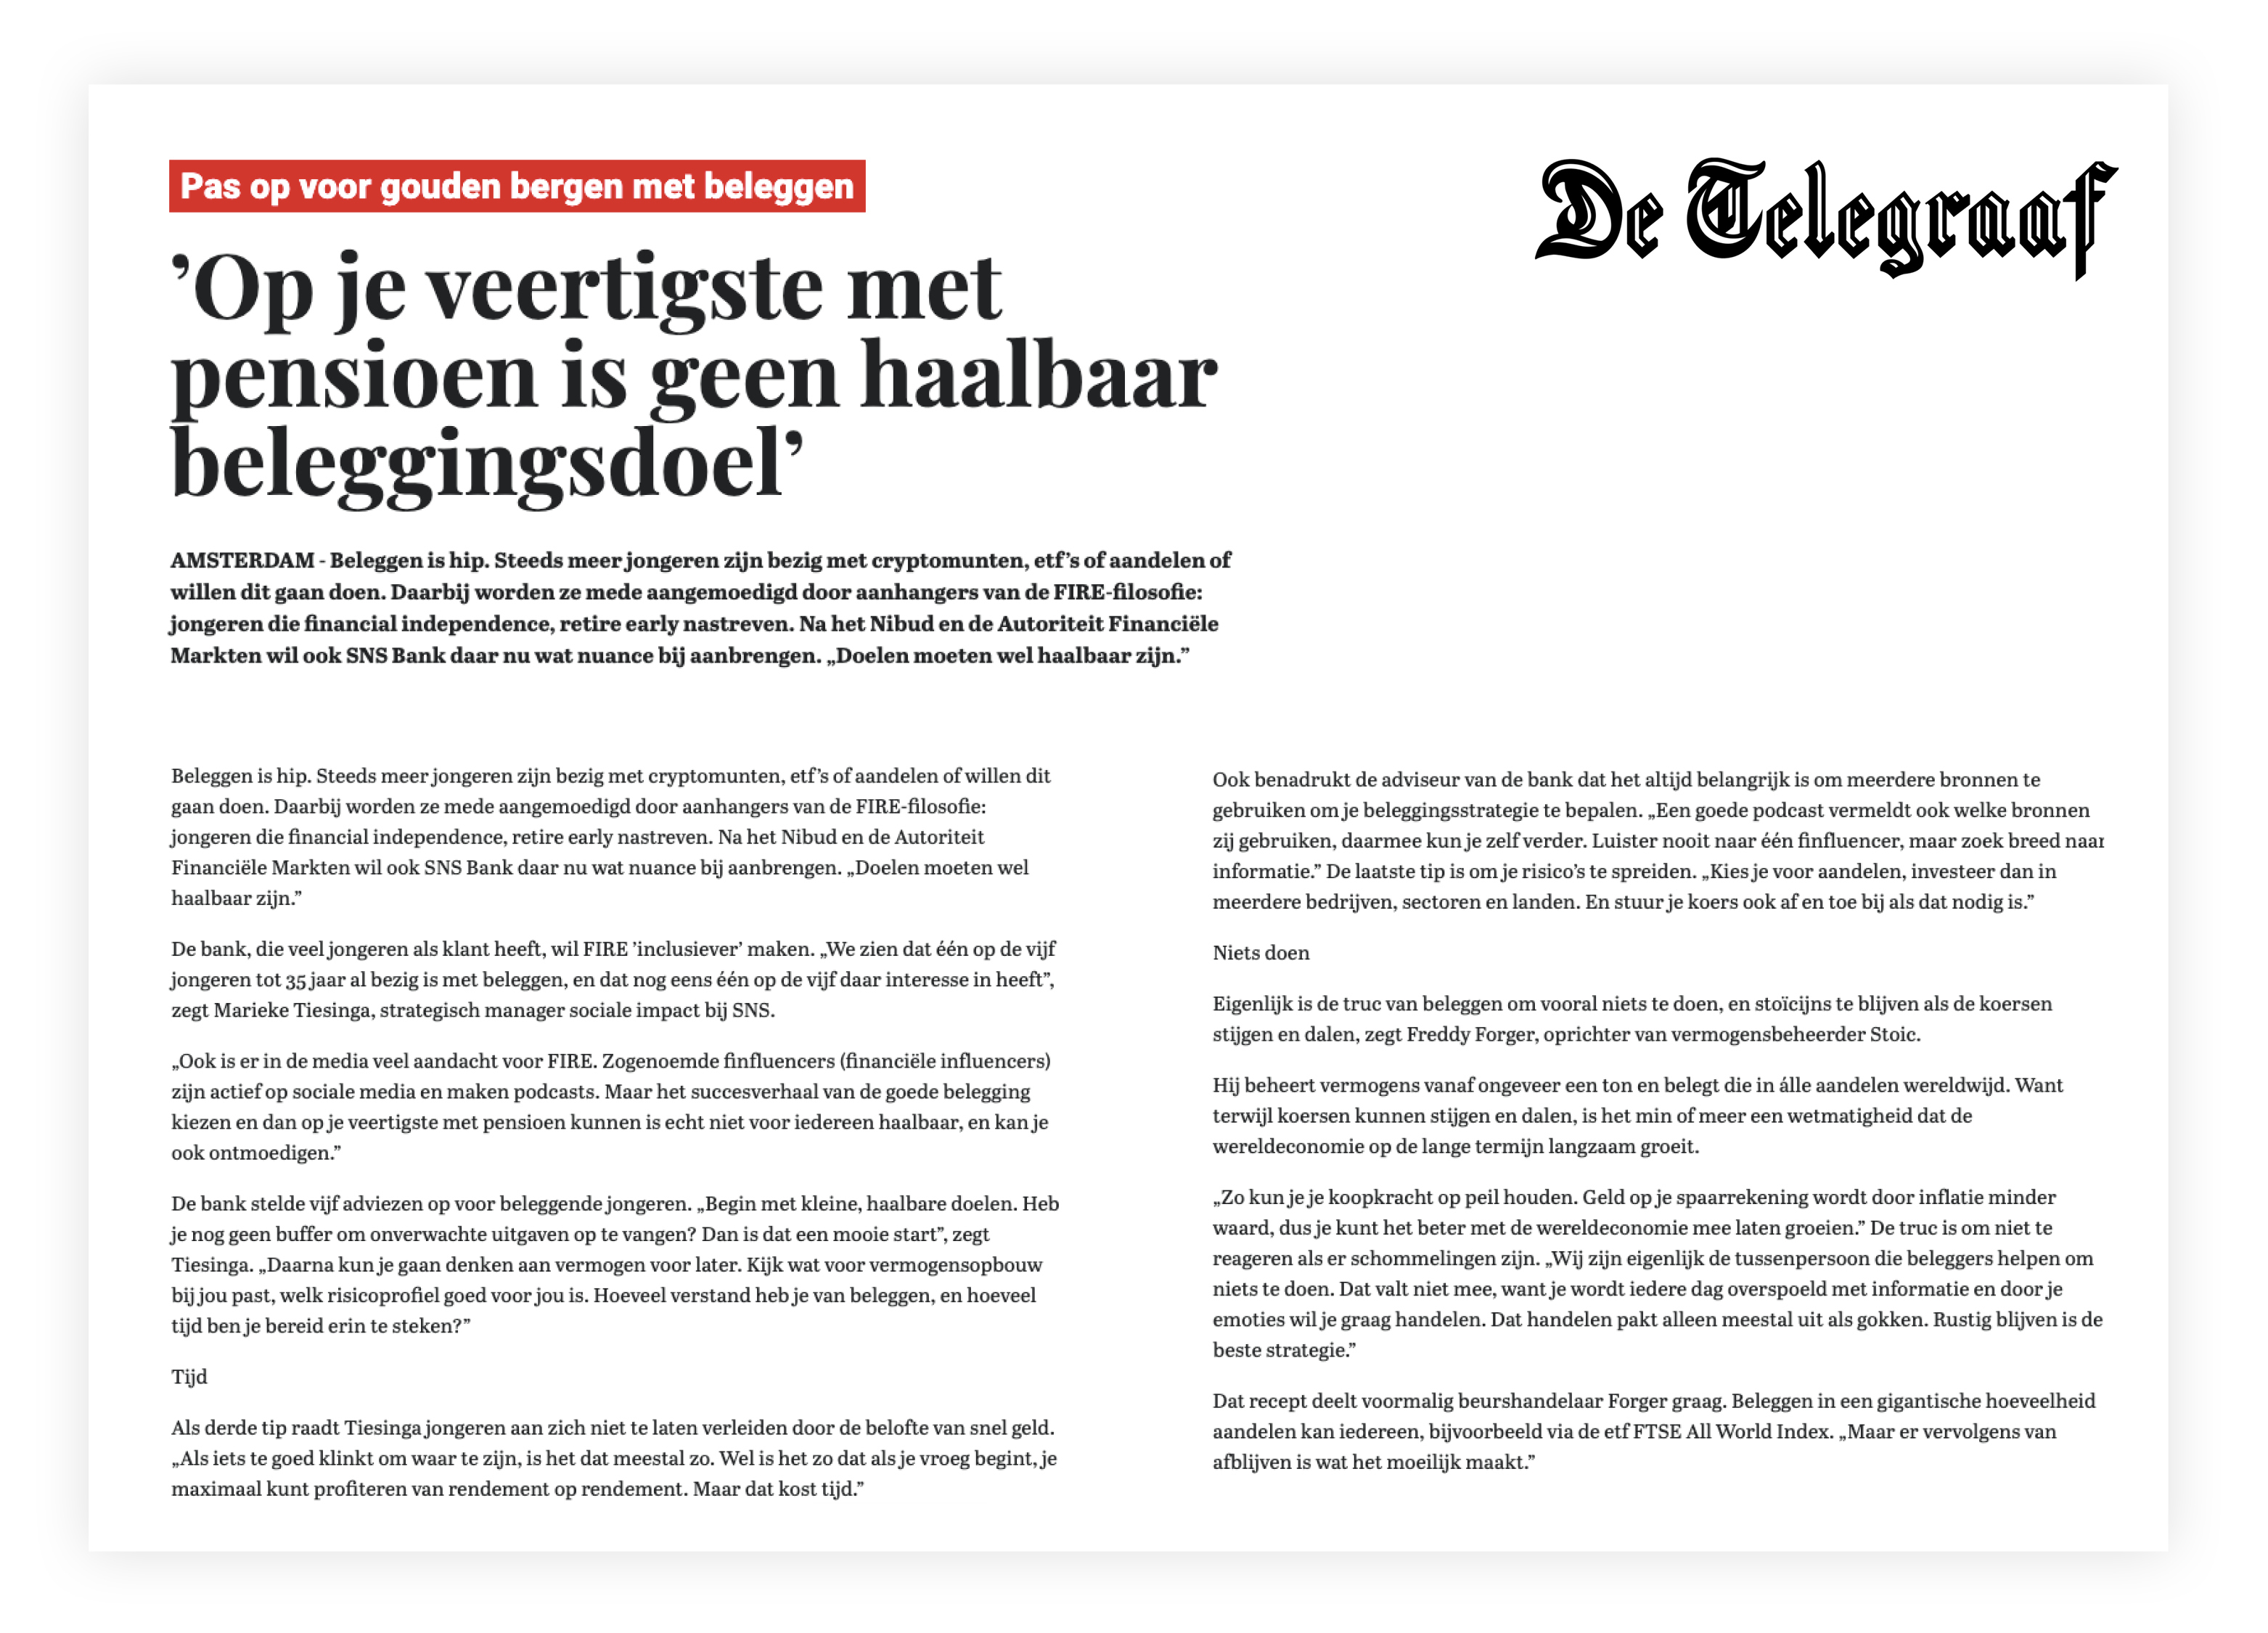 Artikel van Telegraaf op 21 juli 2021